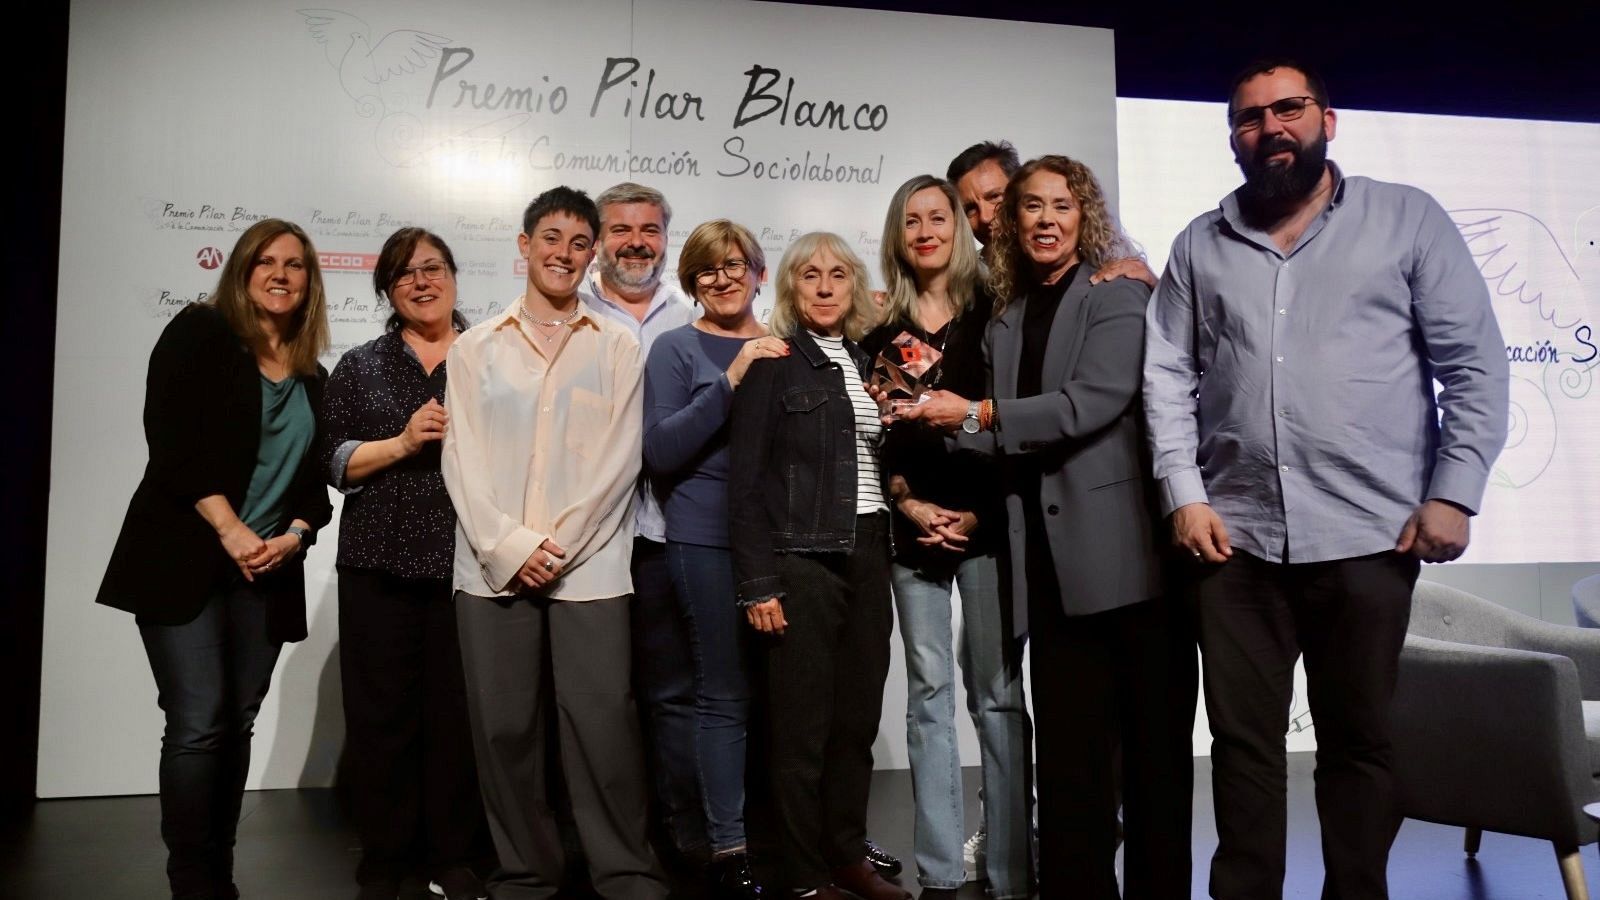 El equipo de 'En Portada', recibiendo el premio Pilar Blanco